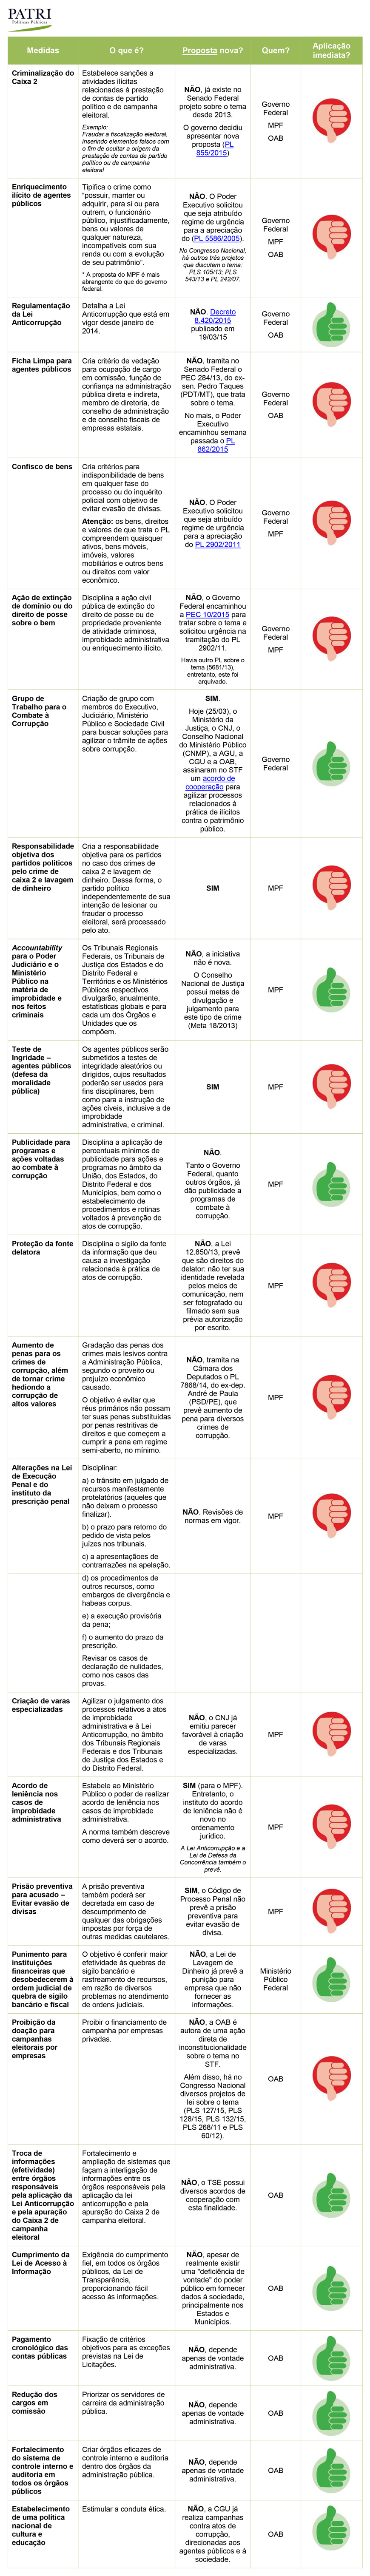 Tabela da Patri com análise dos pontos do Pacote Anticorrupção